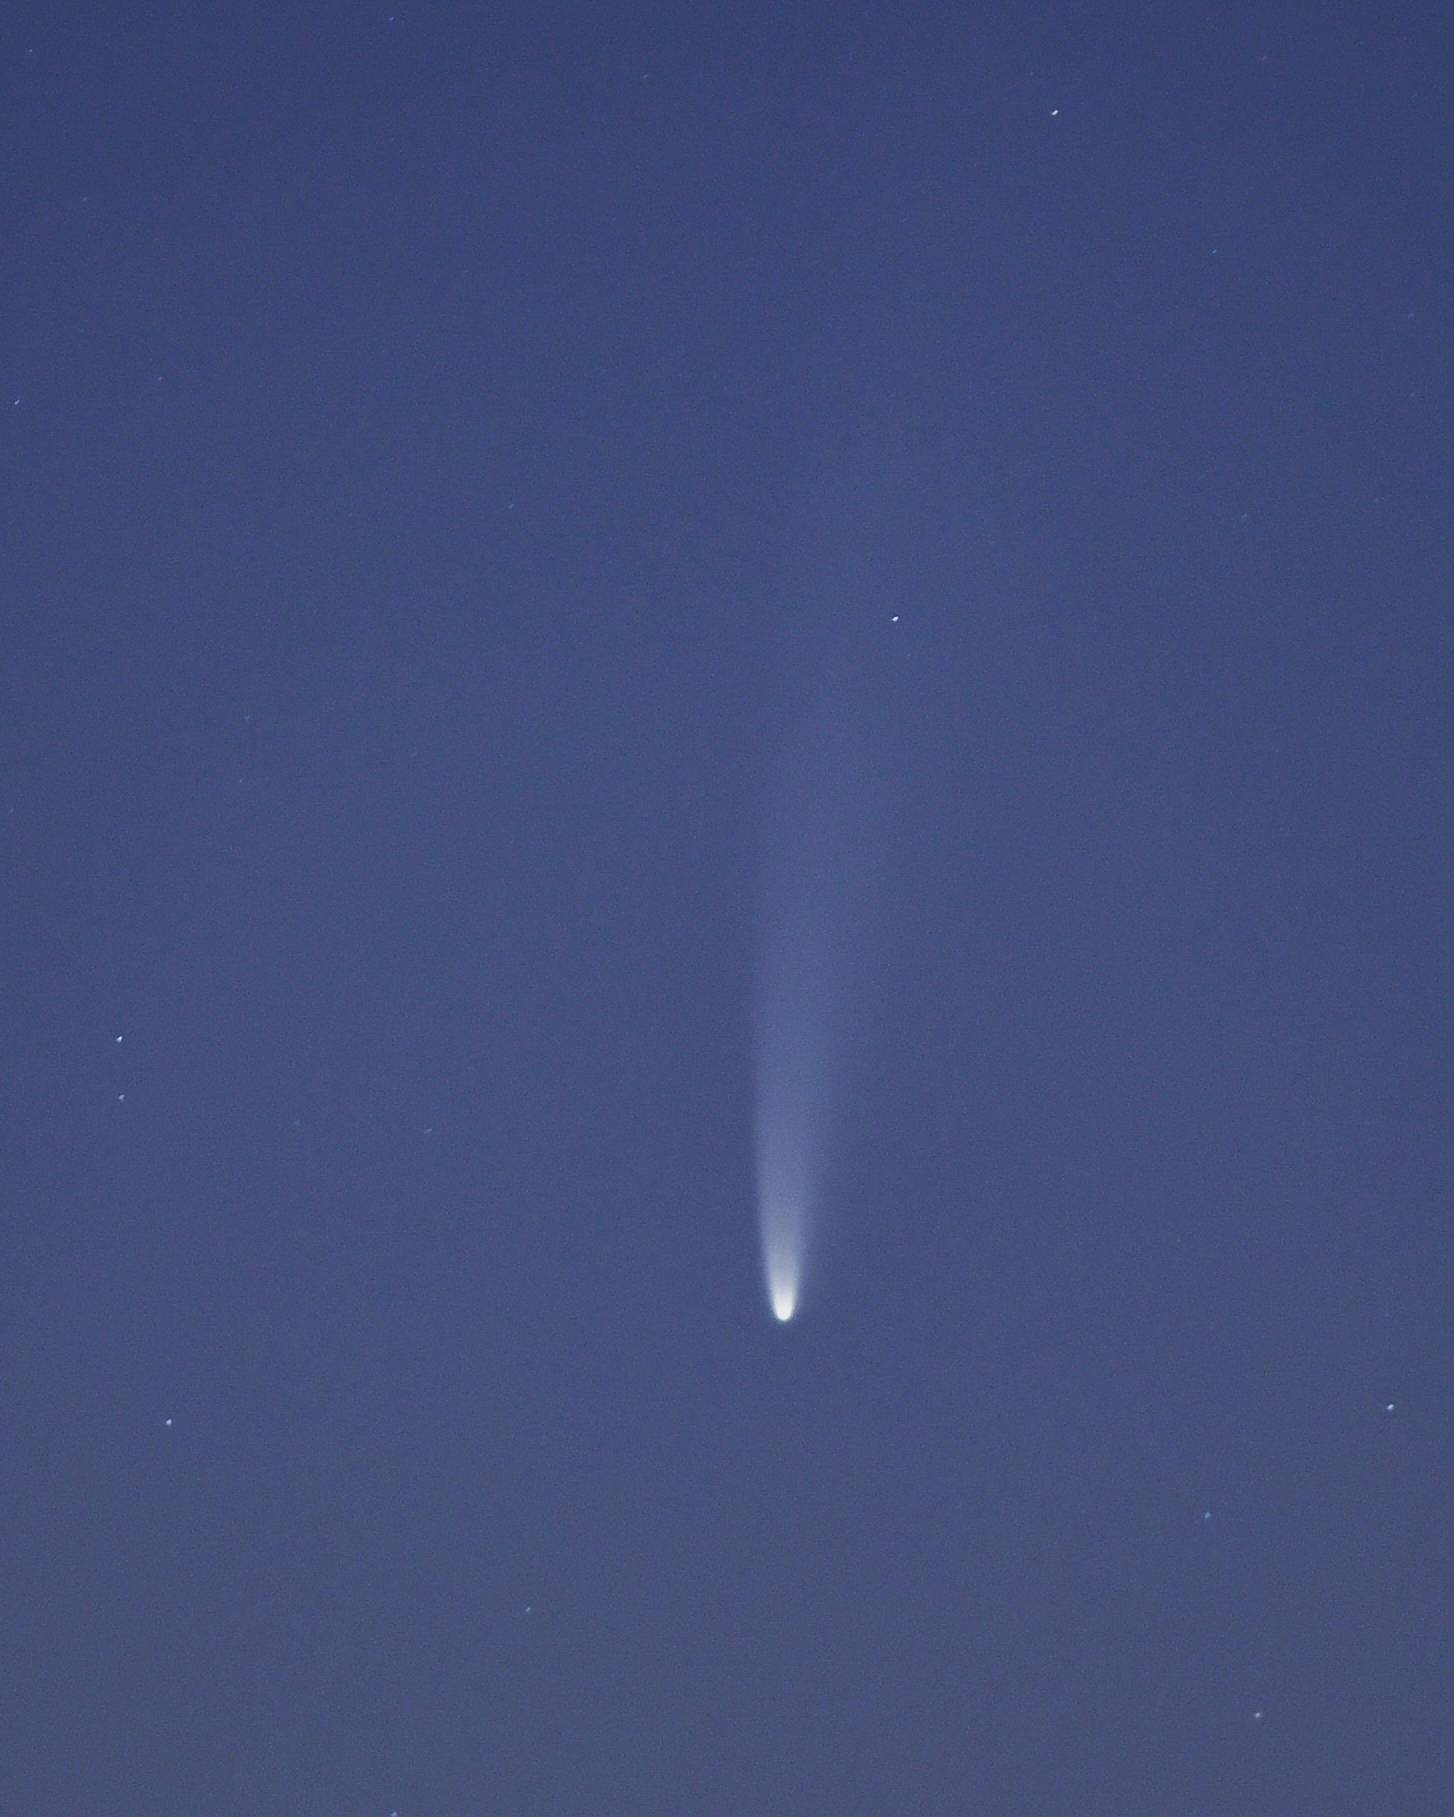 Nebeska predstava na noćnom nebu: Komet Neowise ovih se dana može vidjeti golim okom